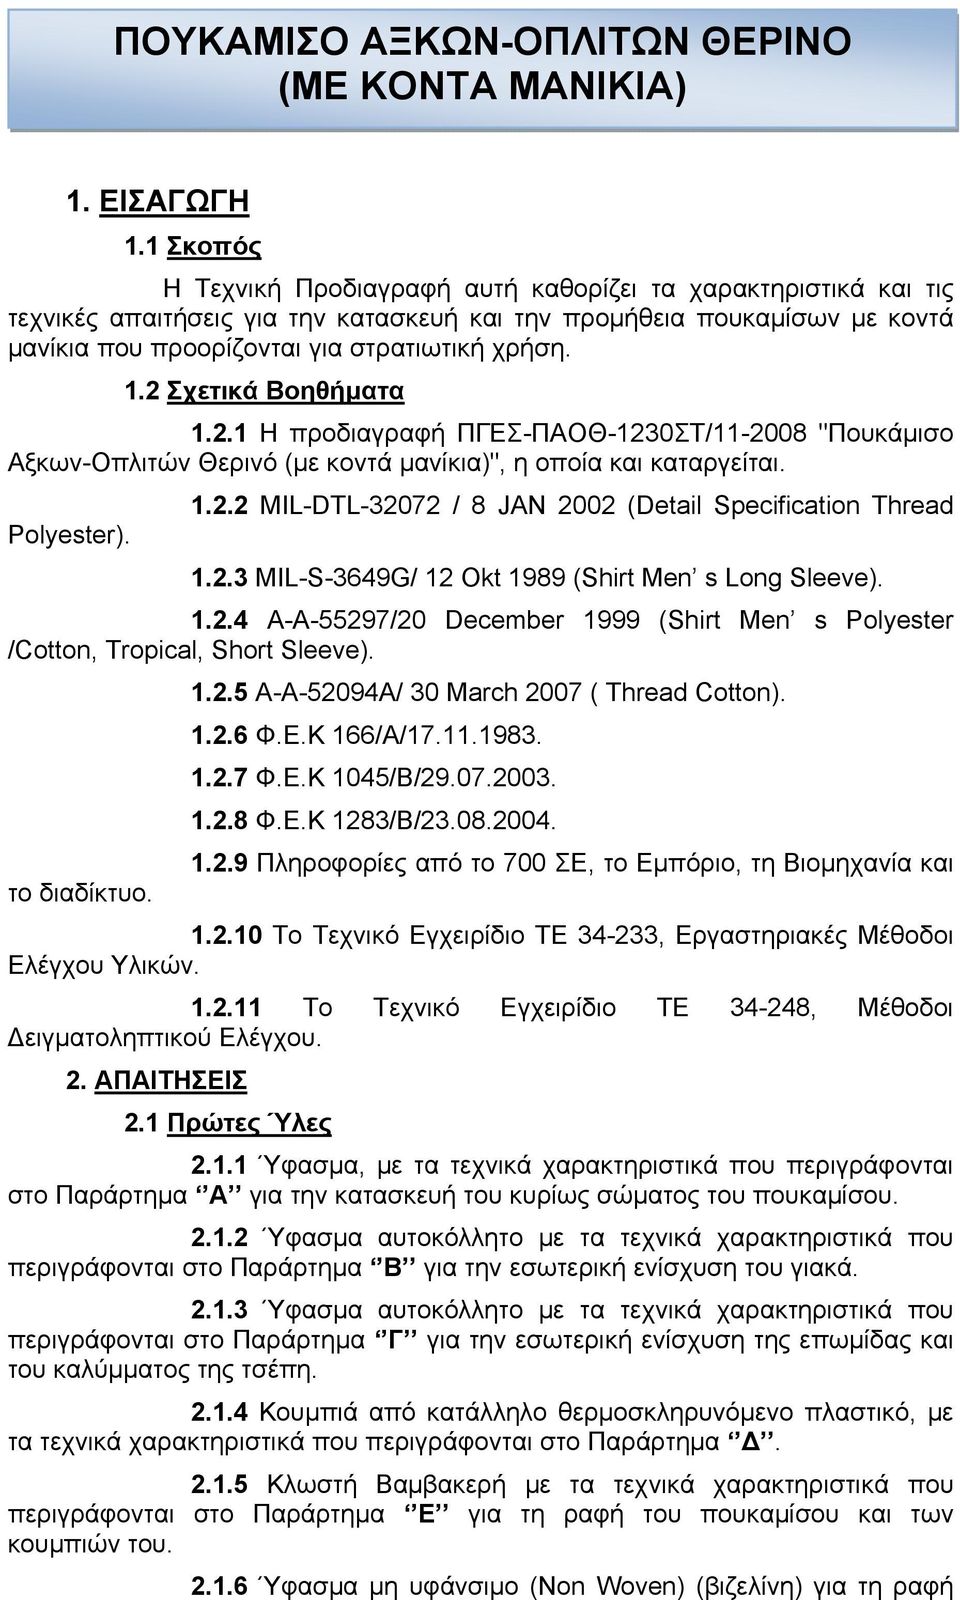 2 Σχετικά Βοηθήματα 1.2.1 Η προδιαγραφή ΠΓΕΣ-ΠΑΟΘ-1230ΣΤ/11-2008 "Πουκάμισο Αξκων-Οπλιτών Θερινό (με κοντά μανίκια)", η οποία και καταργείται. 1.2.2 MIL-DTL-32072 / 8 JAN 2002 (Detail Specification Thread Polyester).